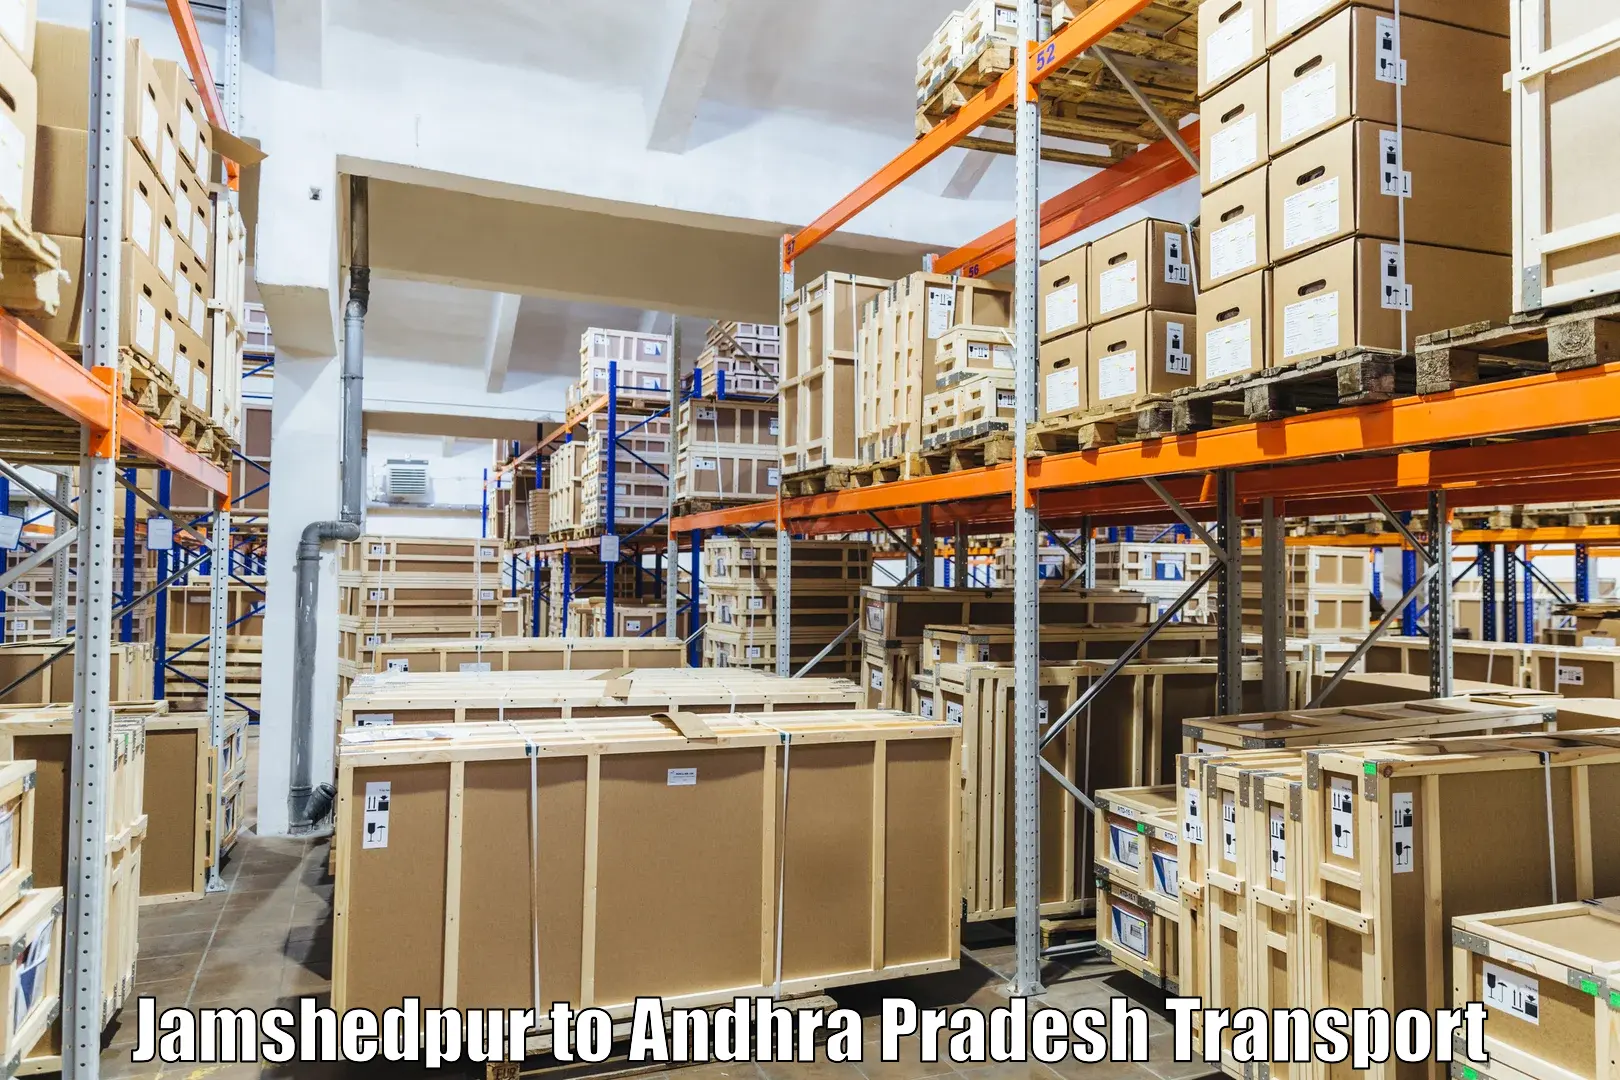 Door to door transport services Jamshedpur to Andhra Pradesh